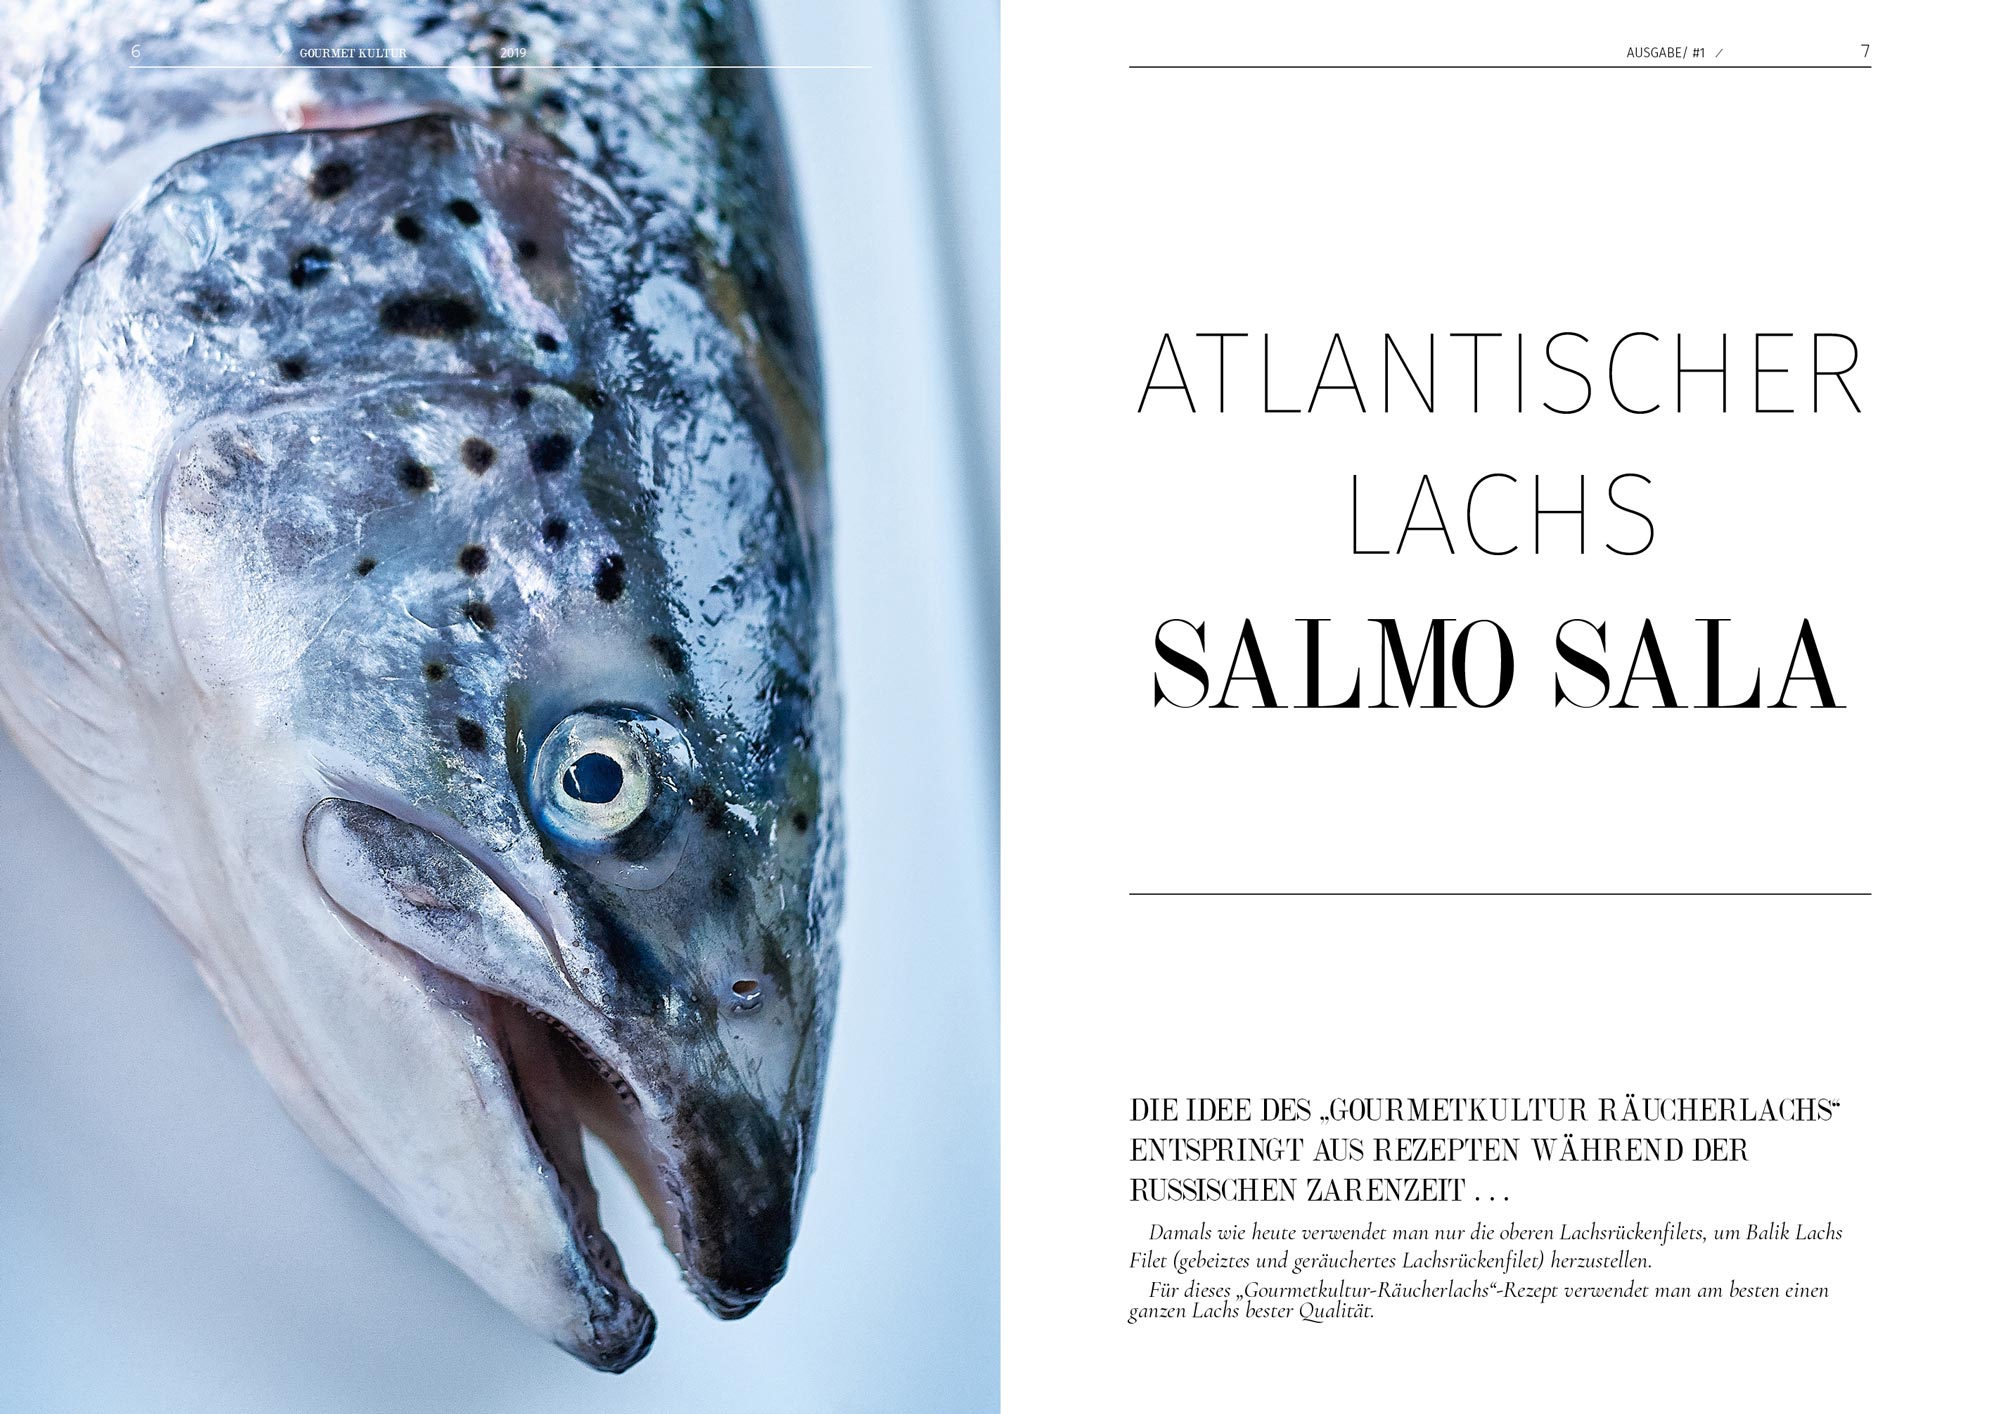 fine-food-blog-magazin-lachs-rauechern Atlantischer Lachs Seite